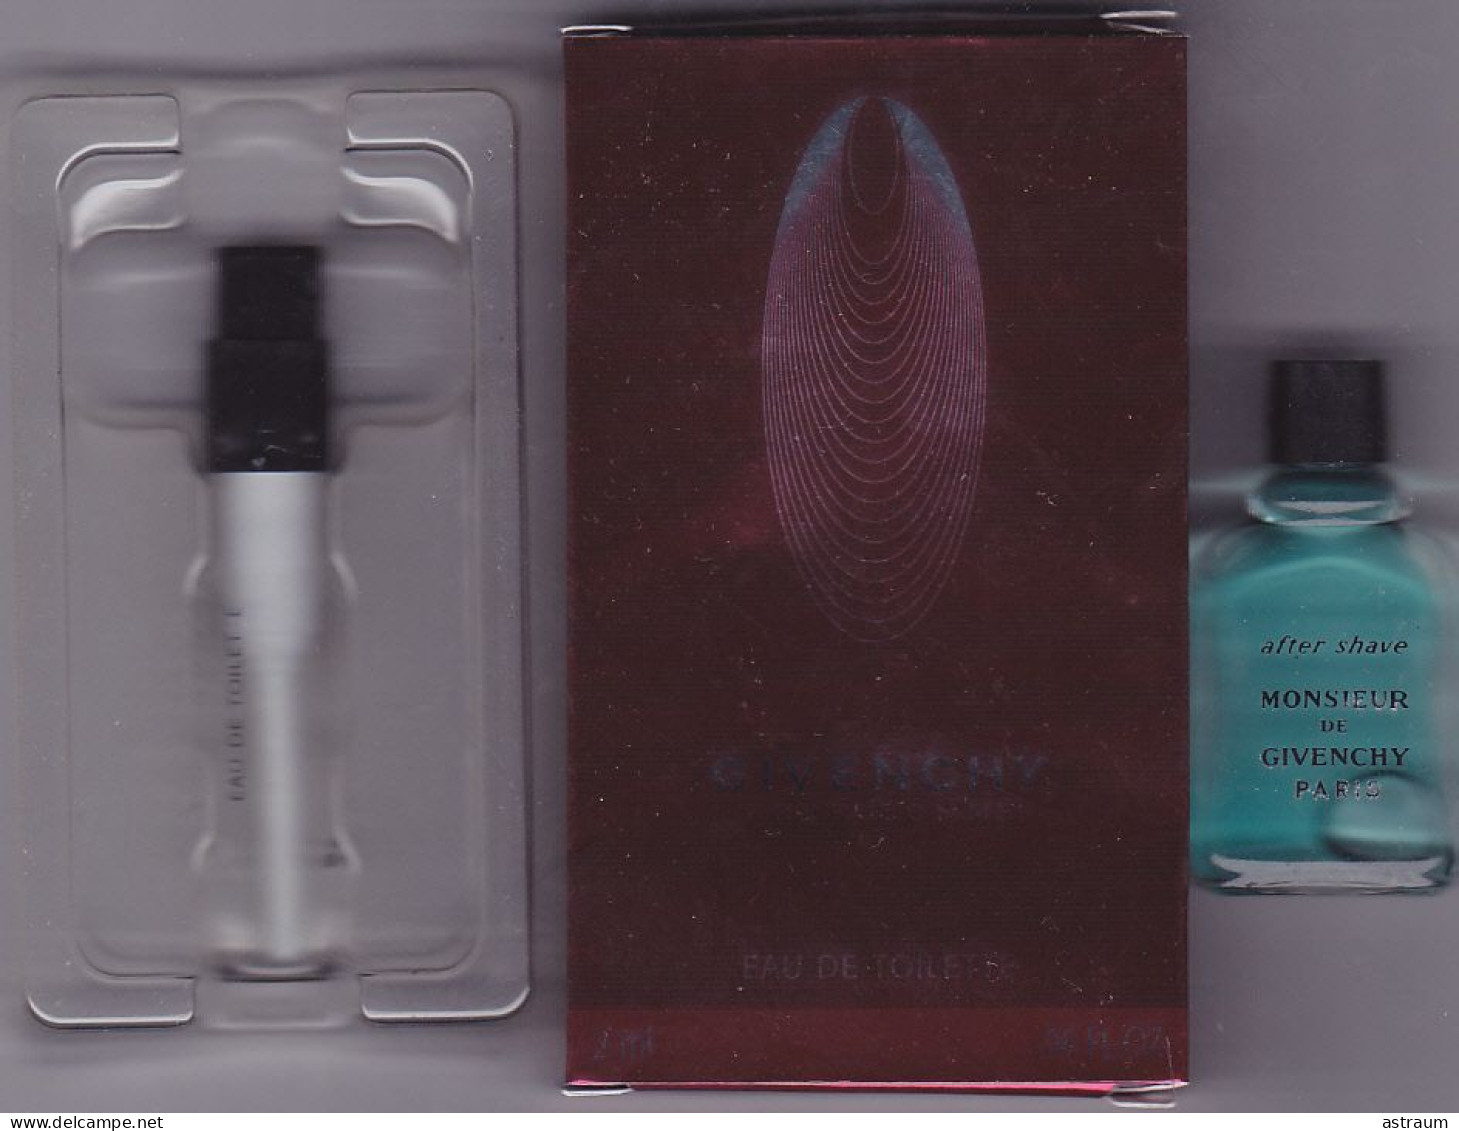 Lot 2 Miniature Vintage Parfum - Givenchy - EDT - Givenchy  & After Shave - Pleine Sans  Boite 4ml & Vaporisateur 2ml - Miniatures Men's Fragrances (without Box)